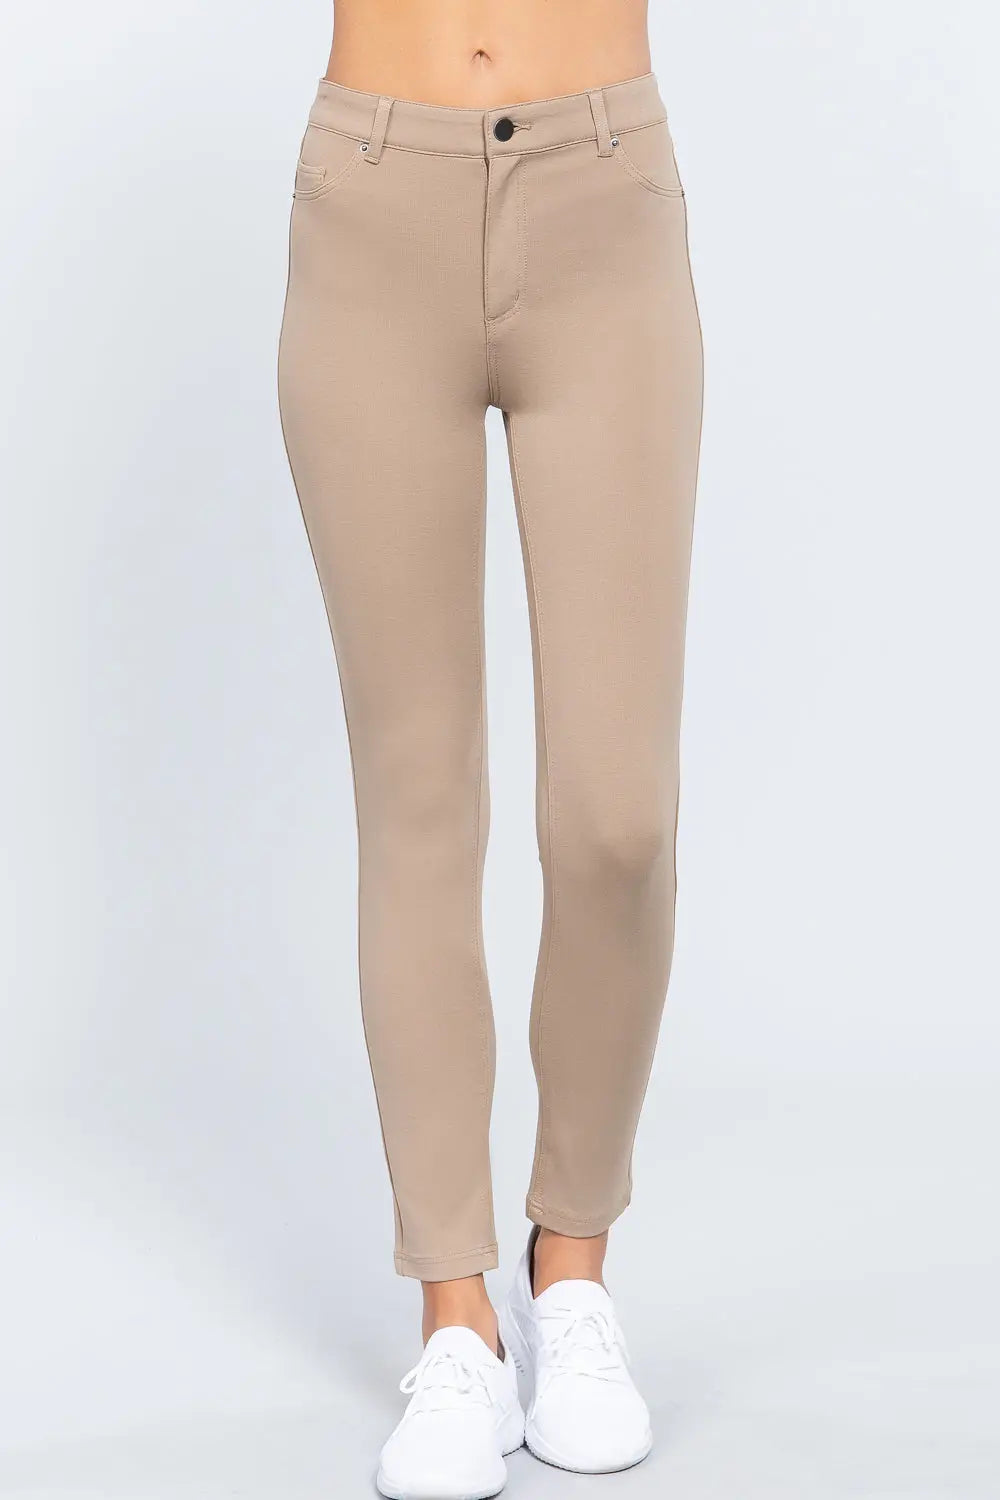 5-pockets Shape Skinny Ponte Mid-rise Pants Sunny EvE Fashion